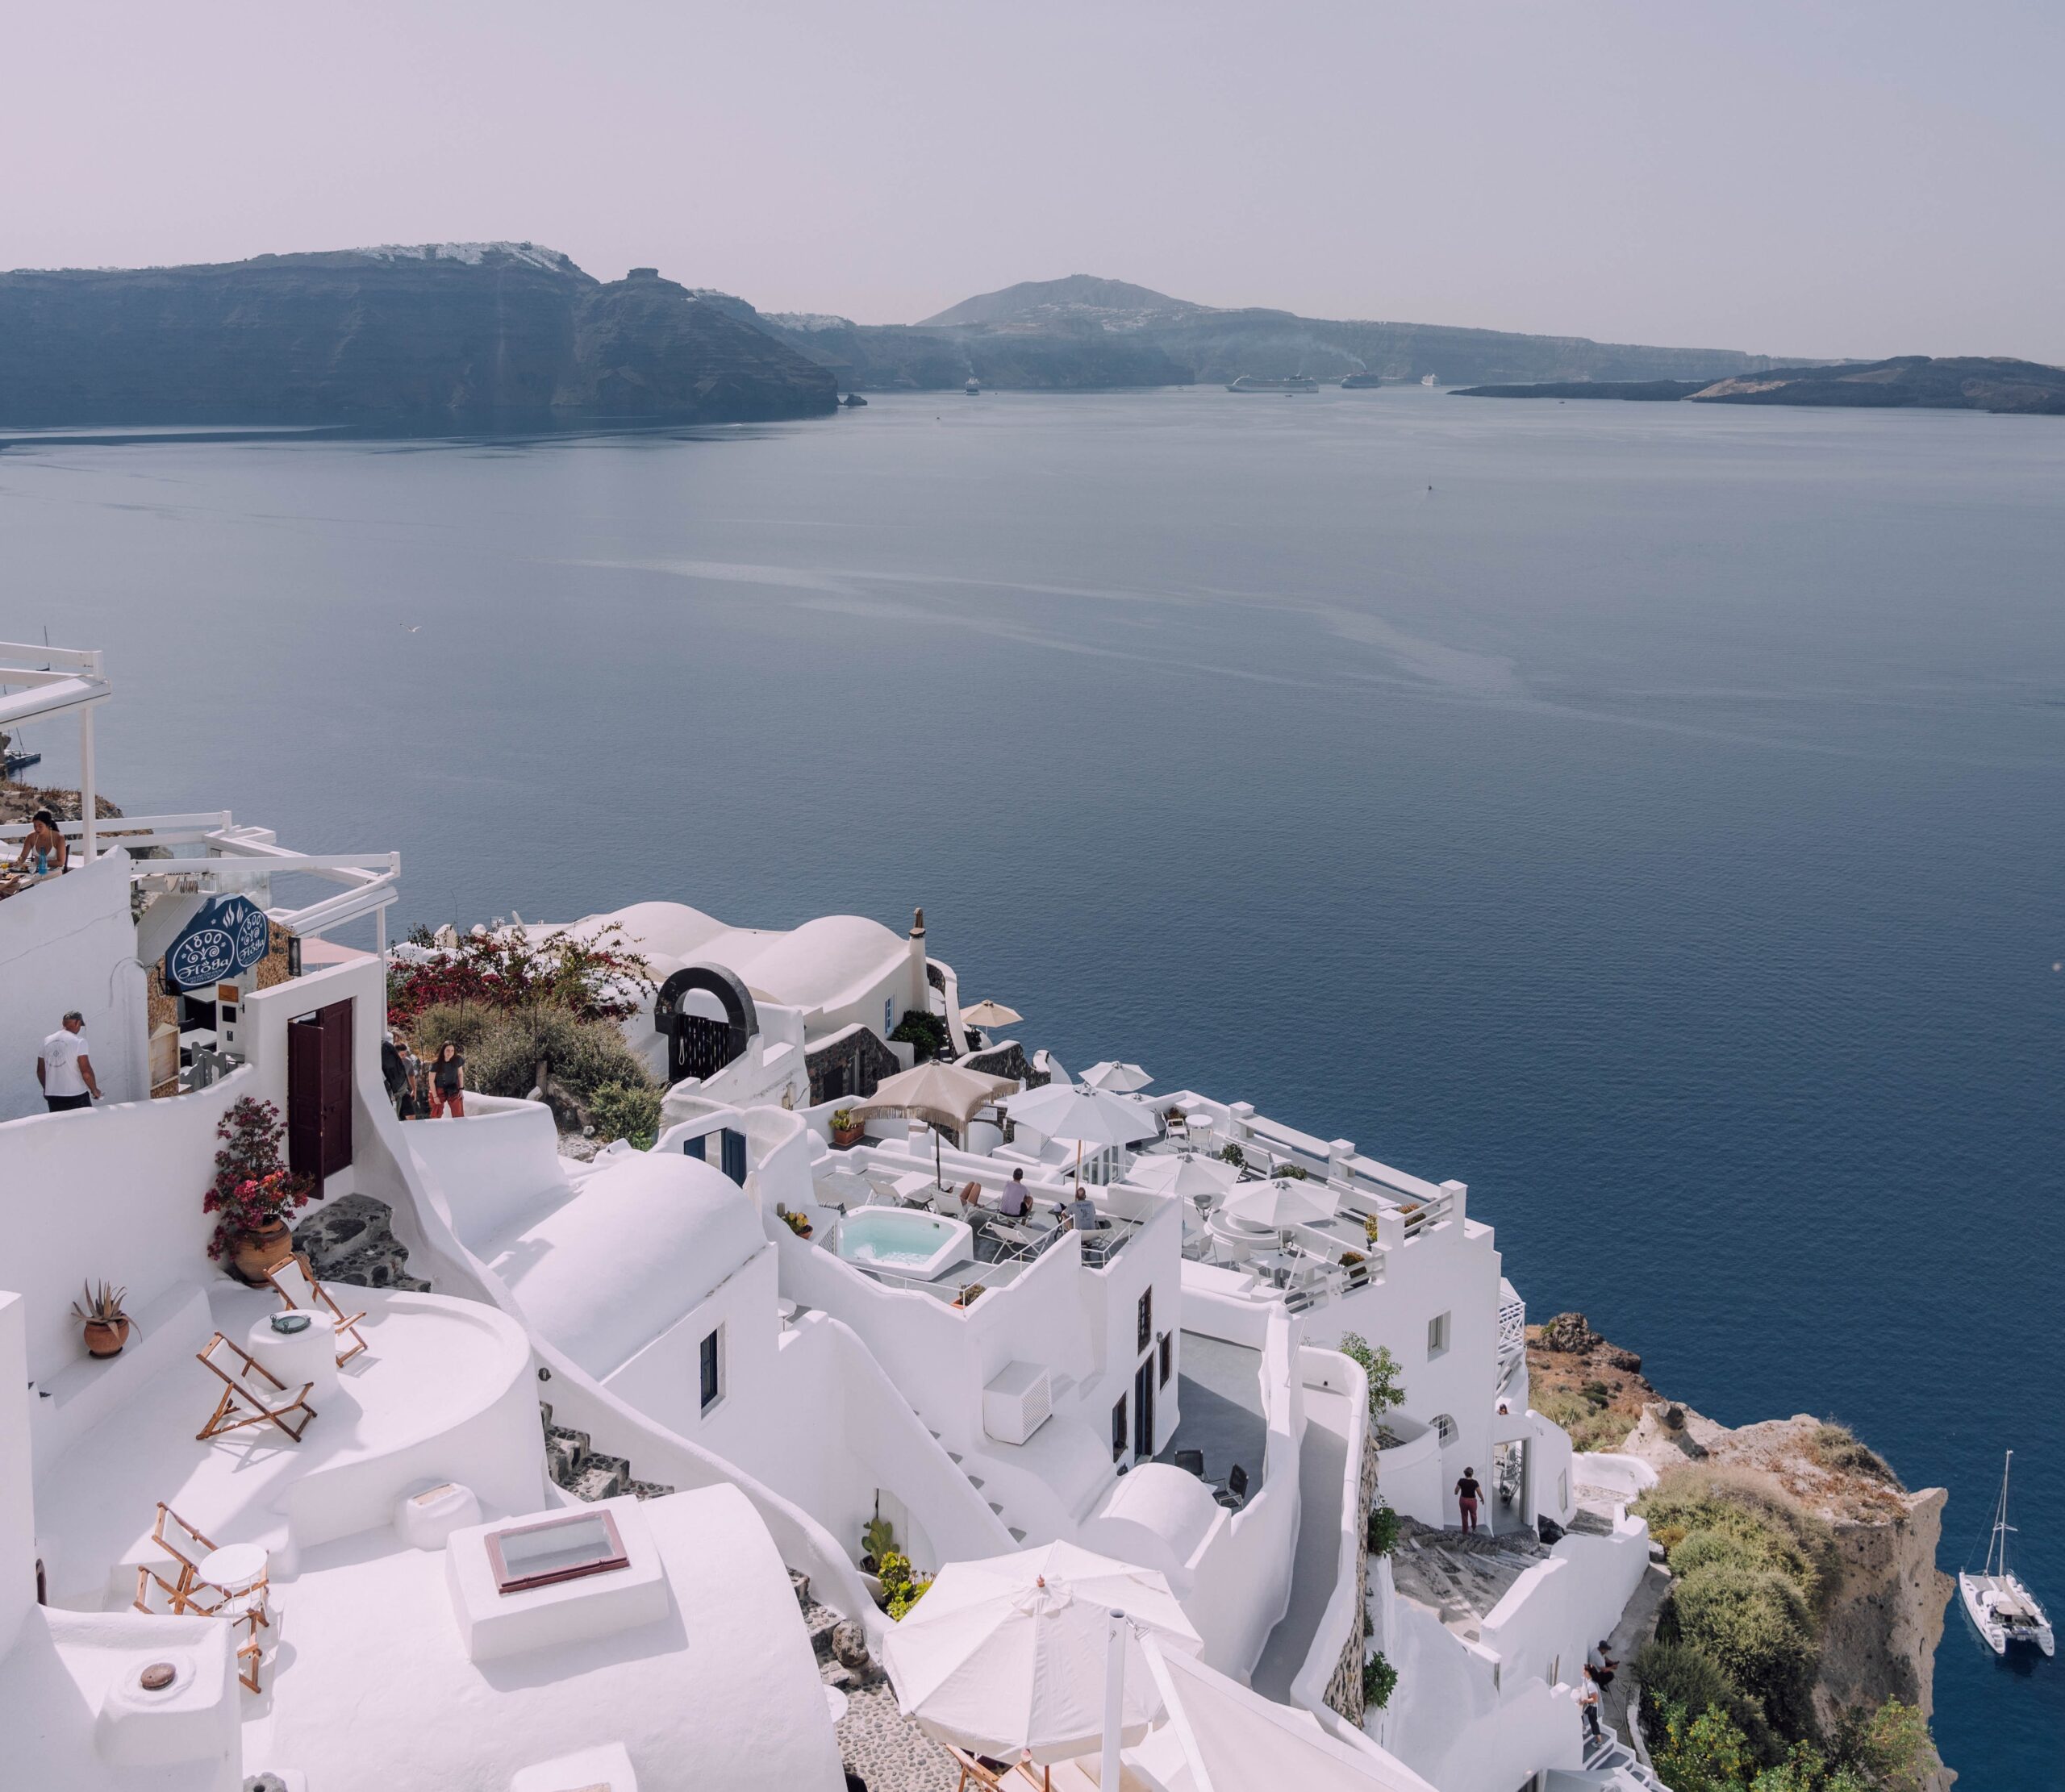 Πώς και πού πηγαίνει ο ελληνικός τουρισμός; -Συνέντευξη με τον Καθηγητή Τουριστικής Πολιτικής και Ανάπτυξης Πάρι Τσάρτα